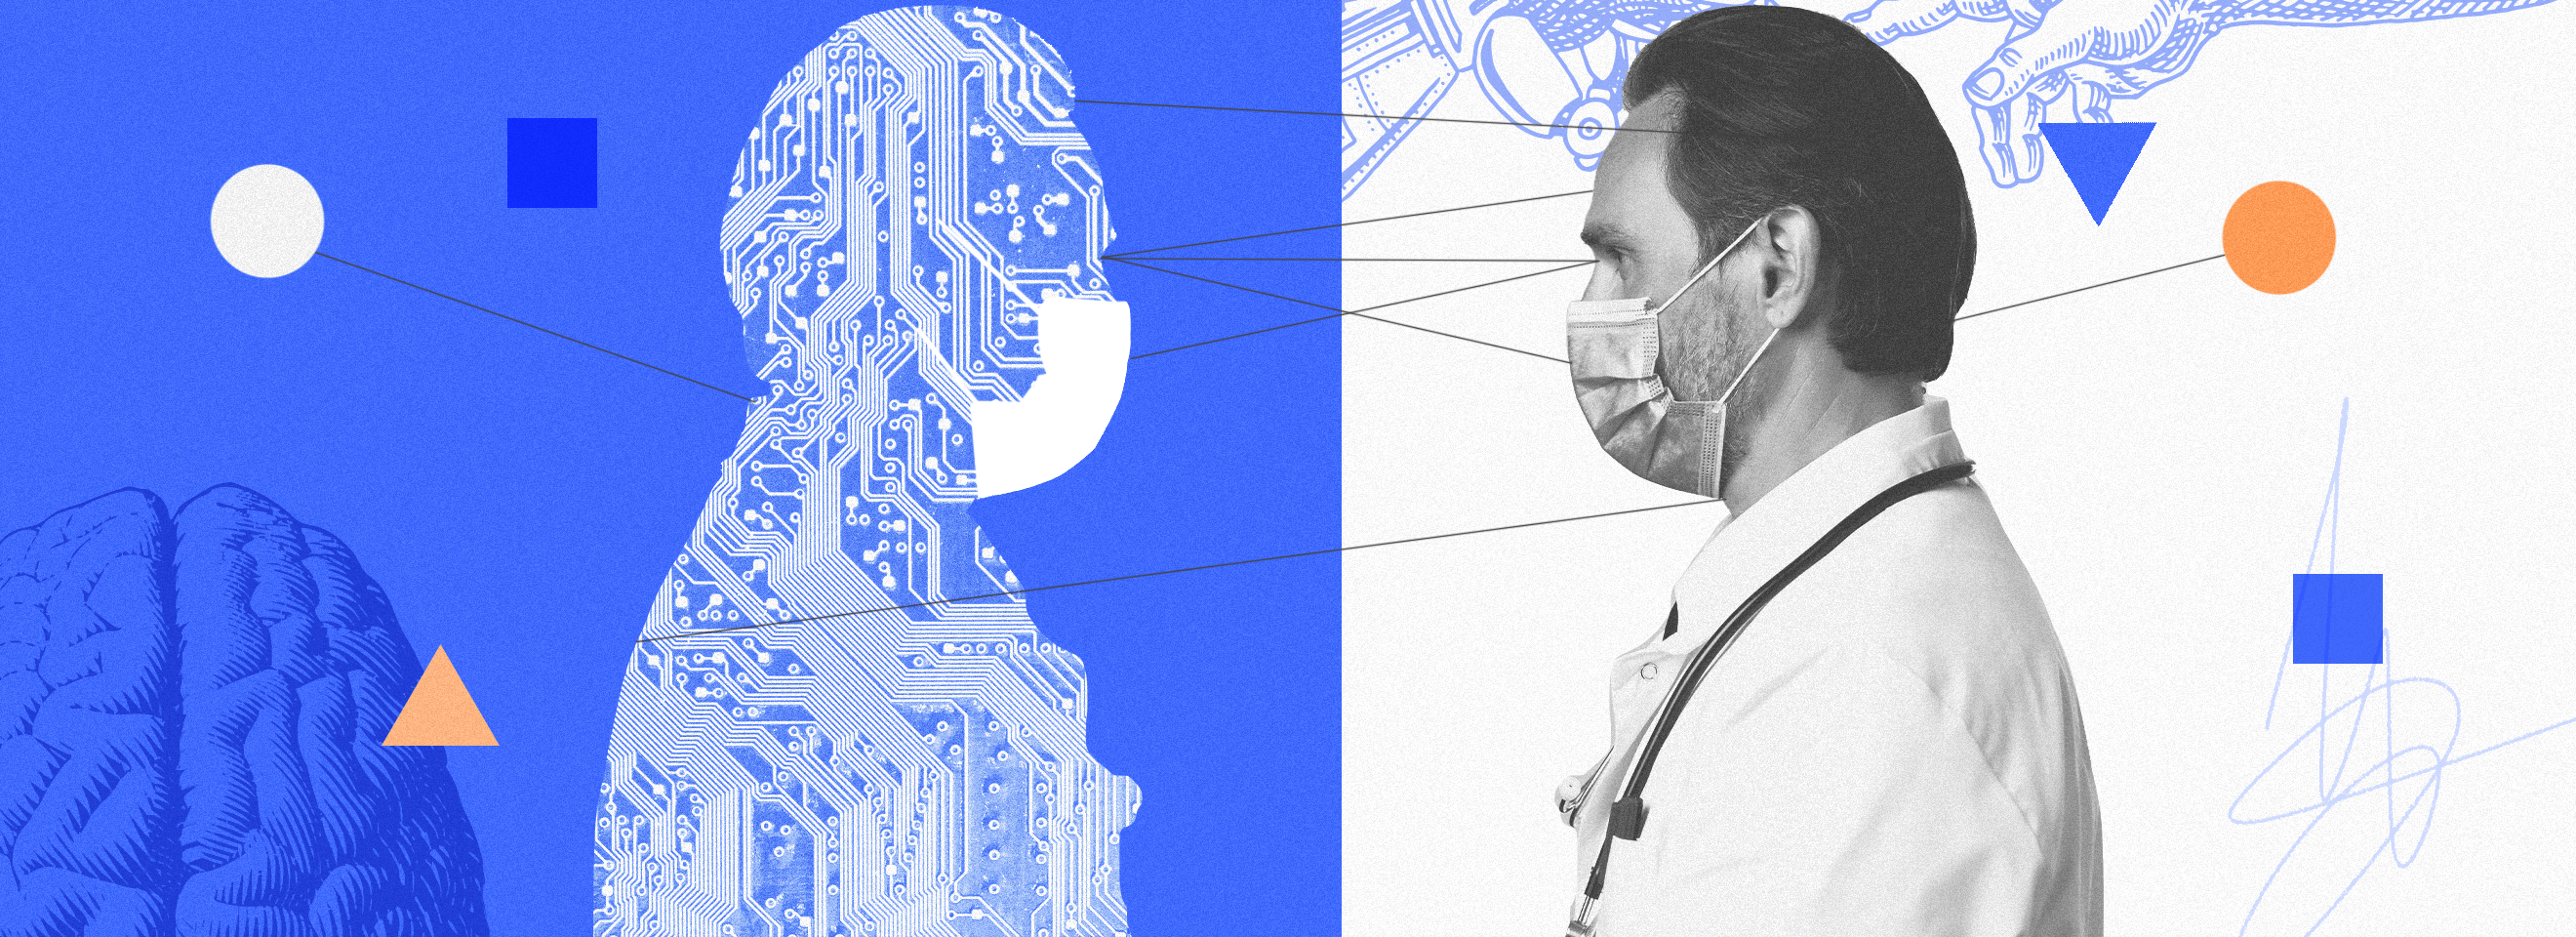 Полноразмерная обложка поста на тему: ИИ-доктор: когда сможем доверить ему здоровье